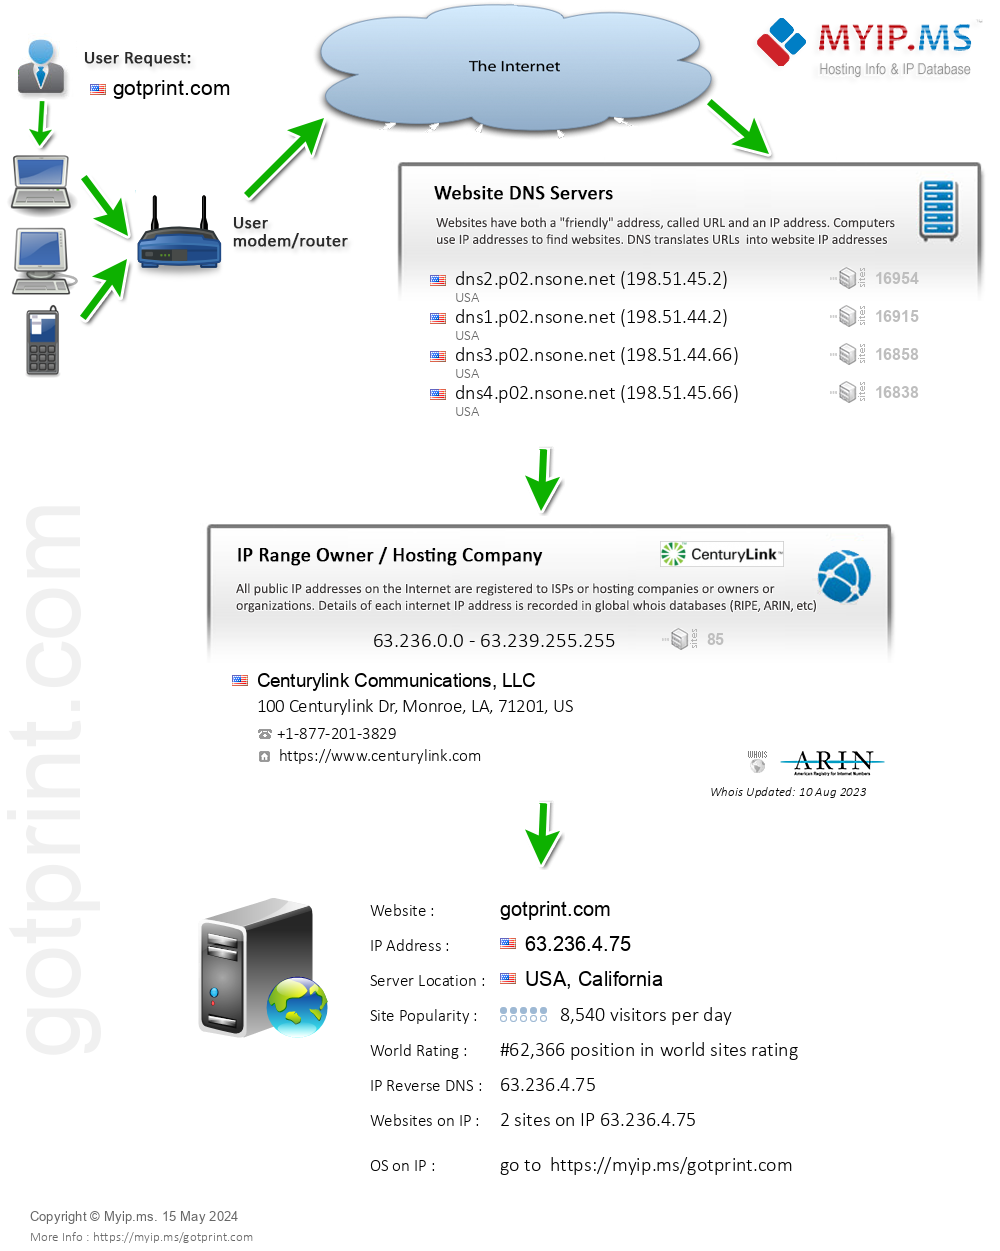 Gotprint.com - Website Hosting Visual IP Diagram